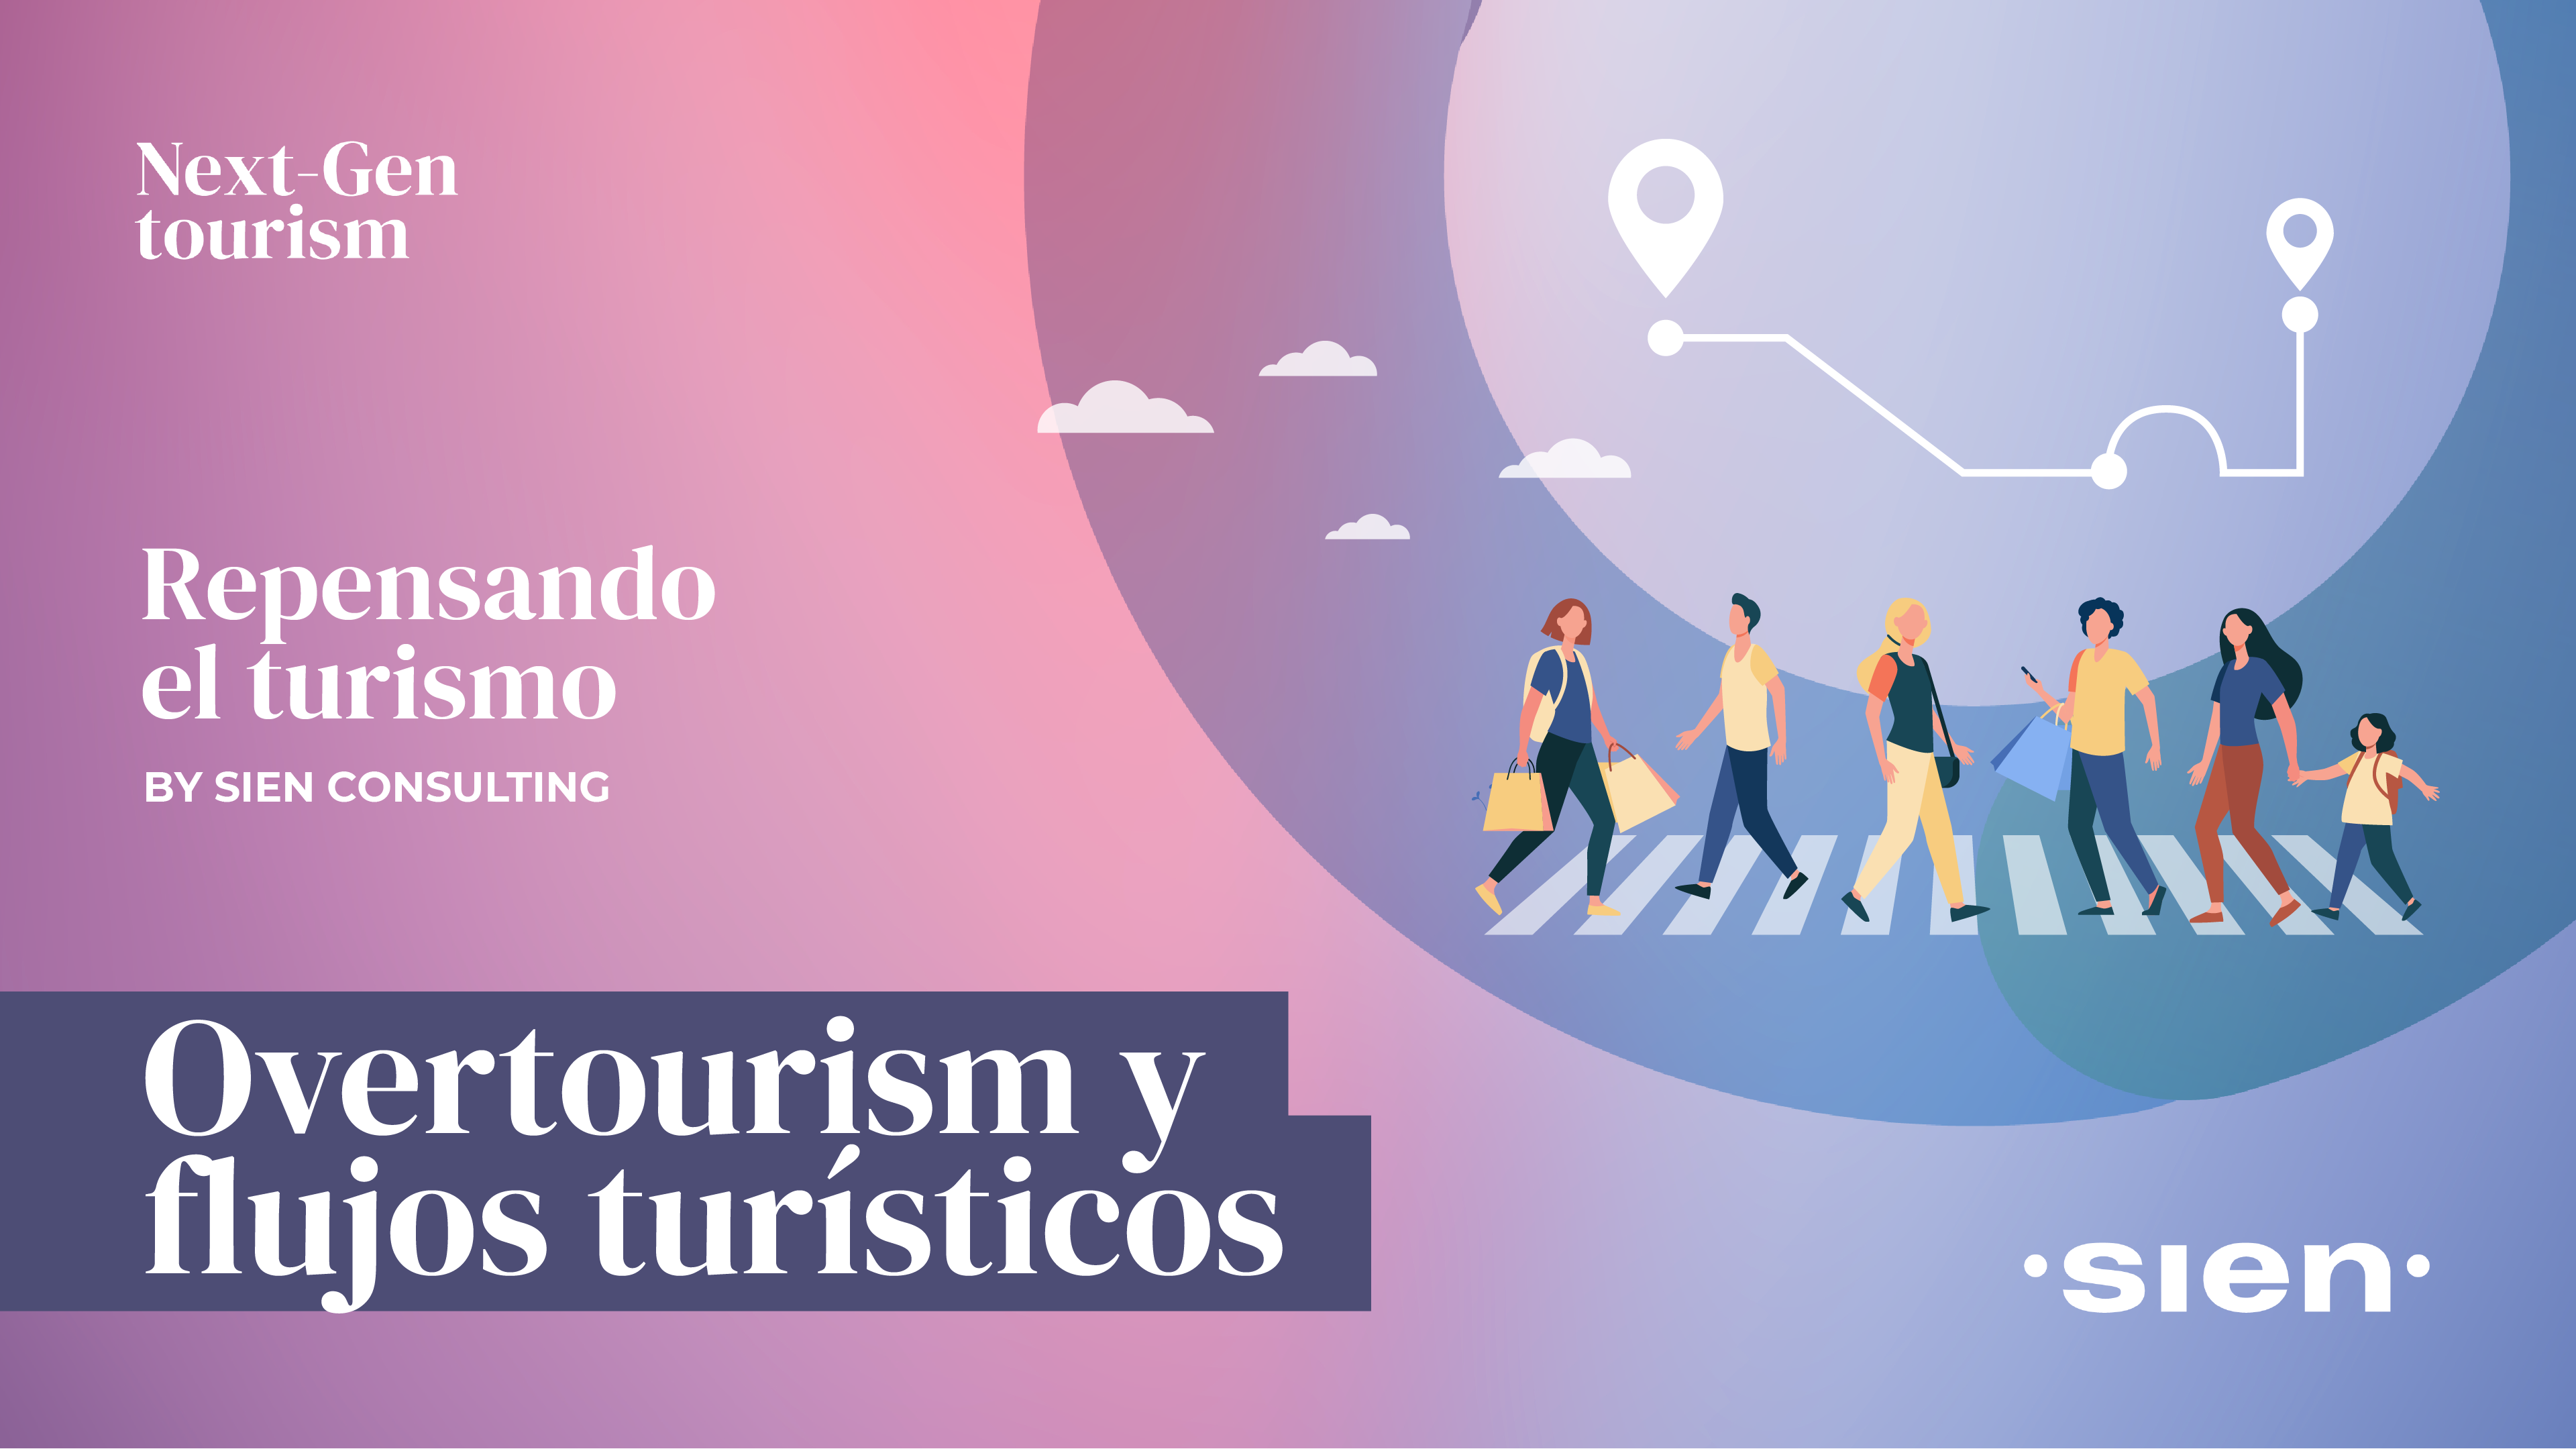 Repensando el turismo: Overtourism y flujos turísticos